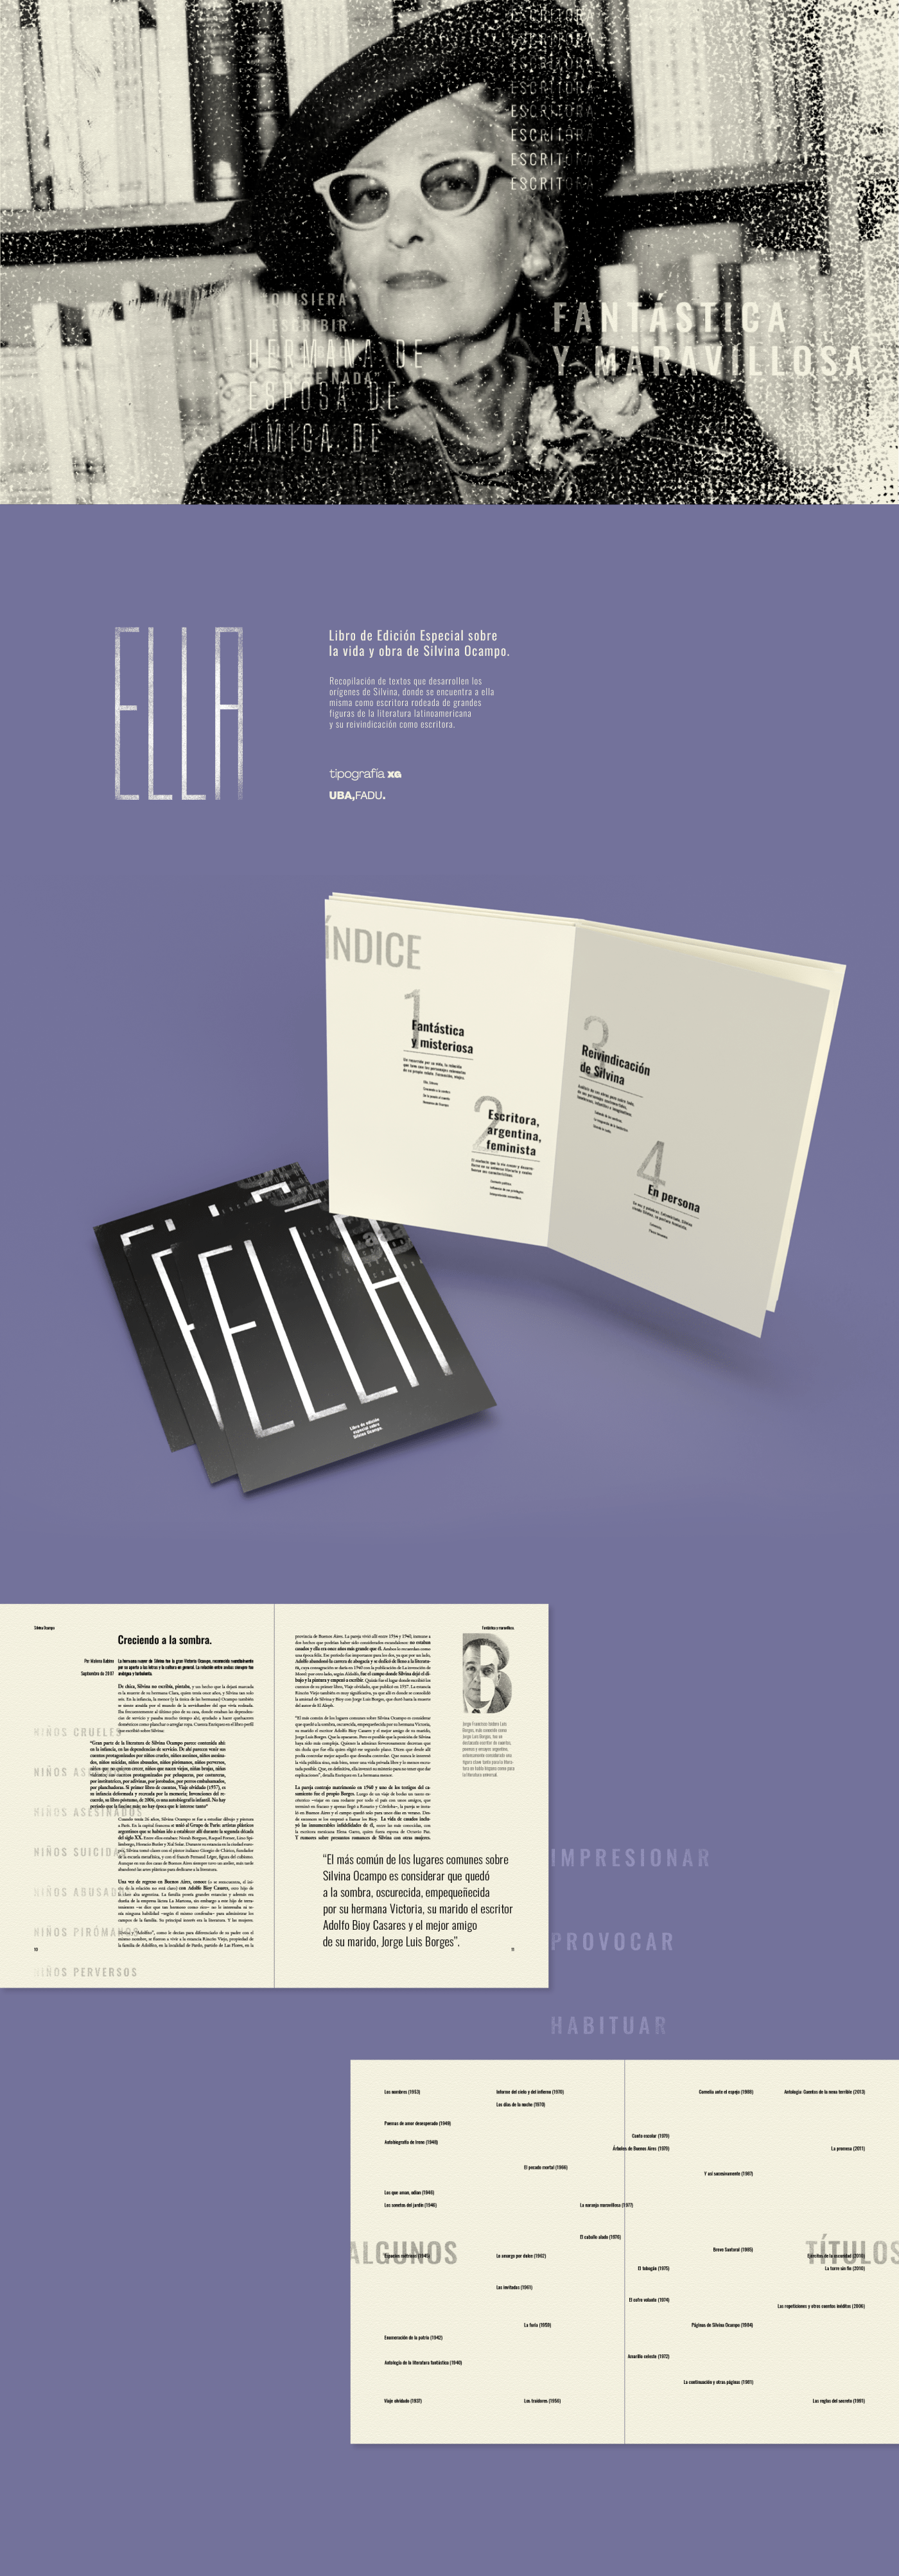 cátedra XG Diseño editorial diseño gráfico editorial fadu fadu uba libro Silvina ocampo tipografia uba